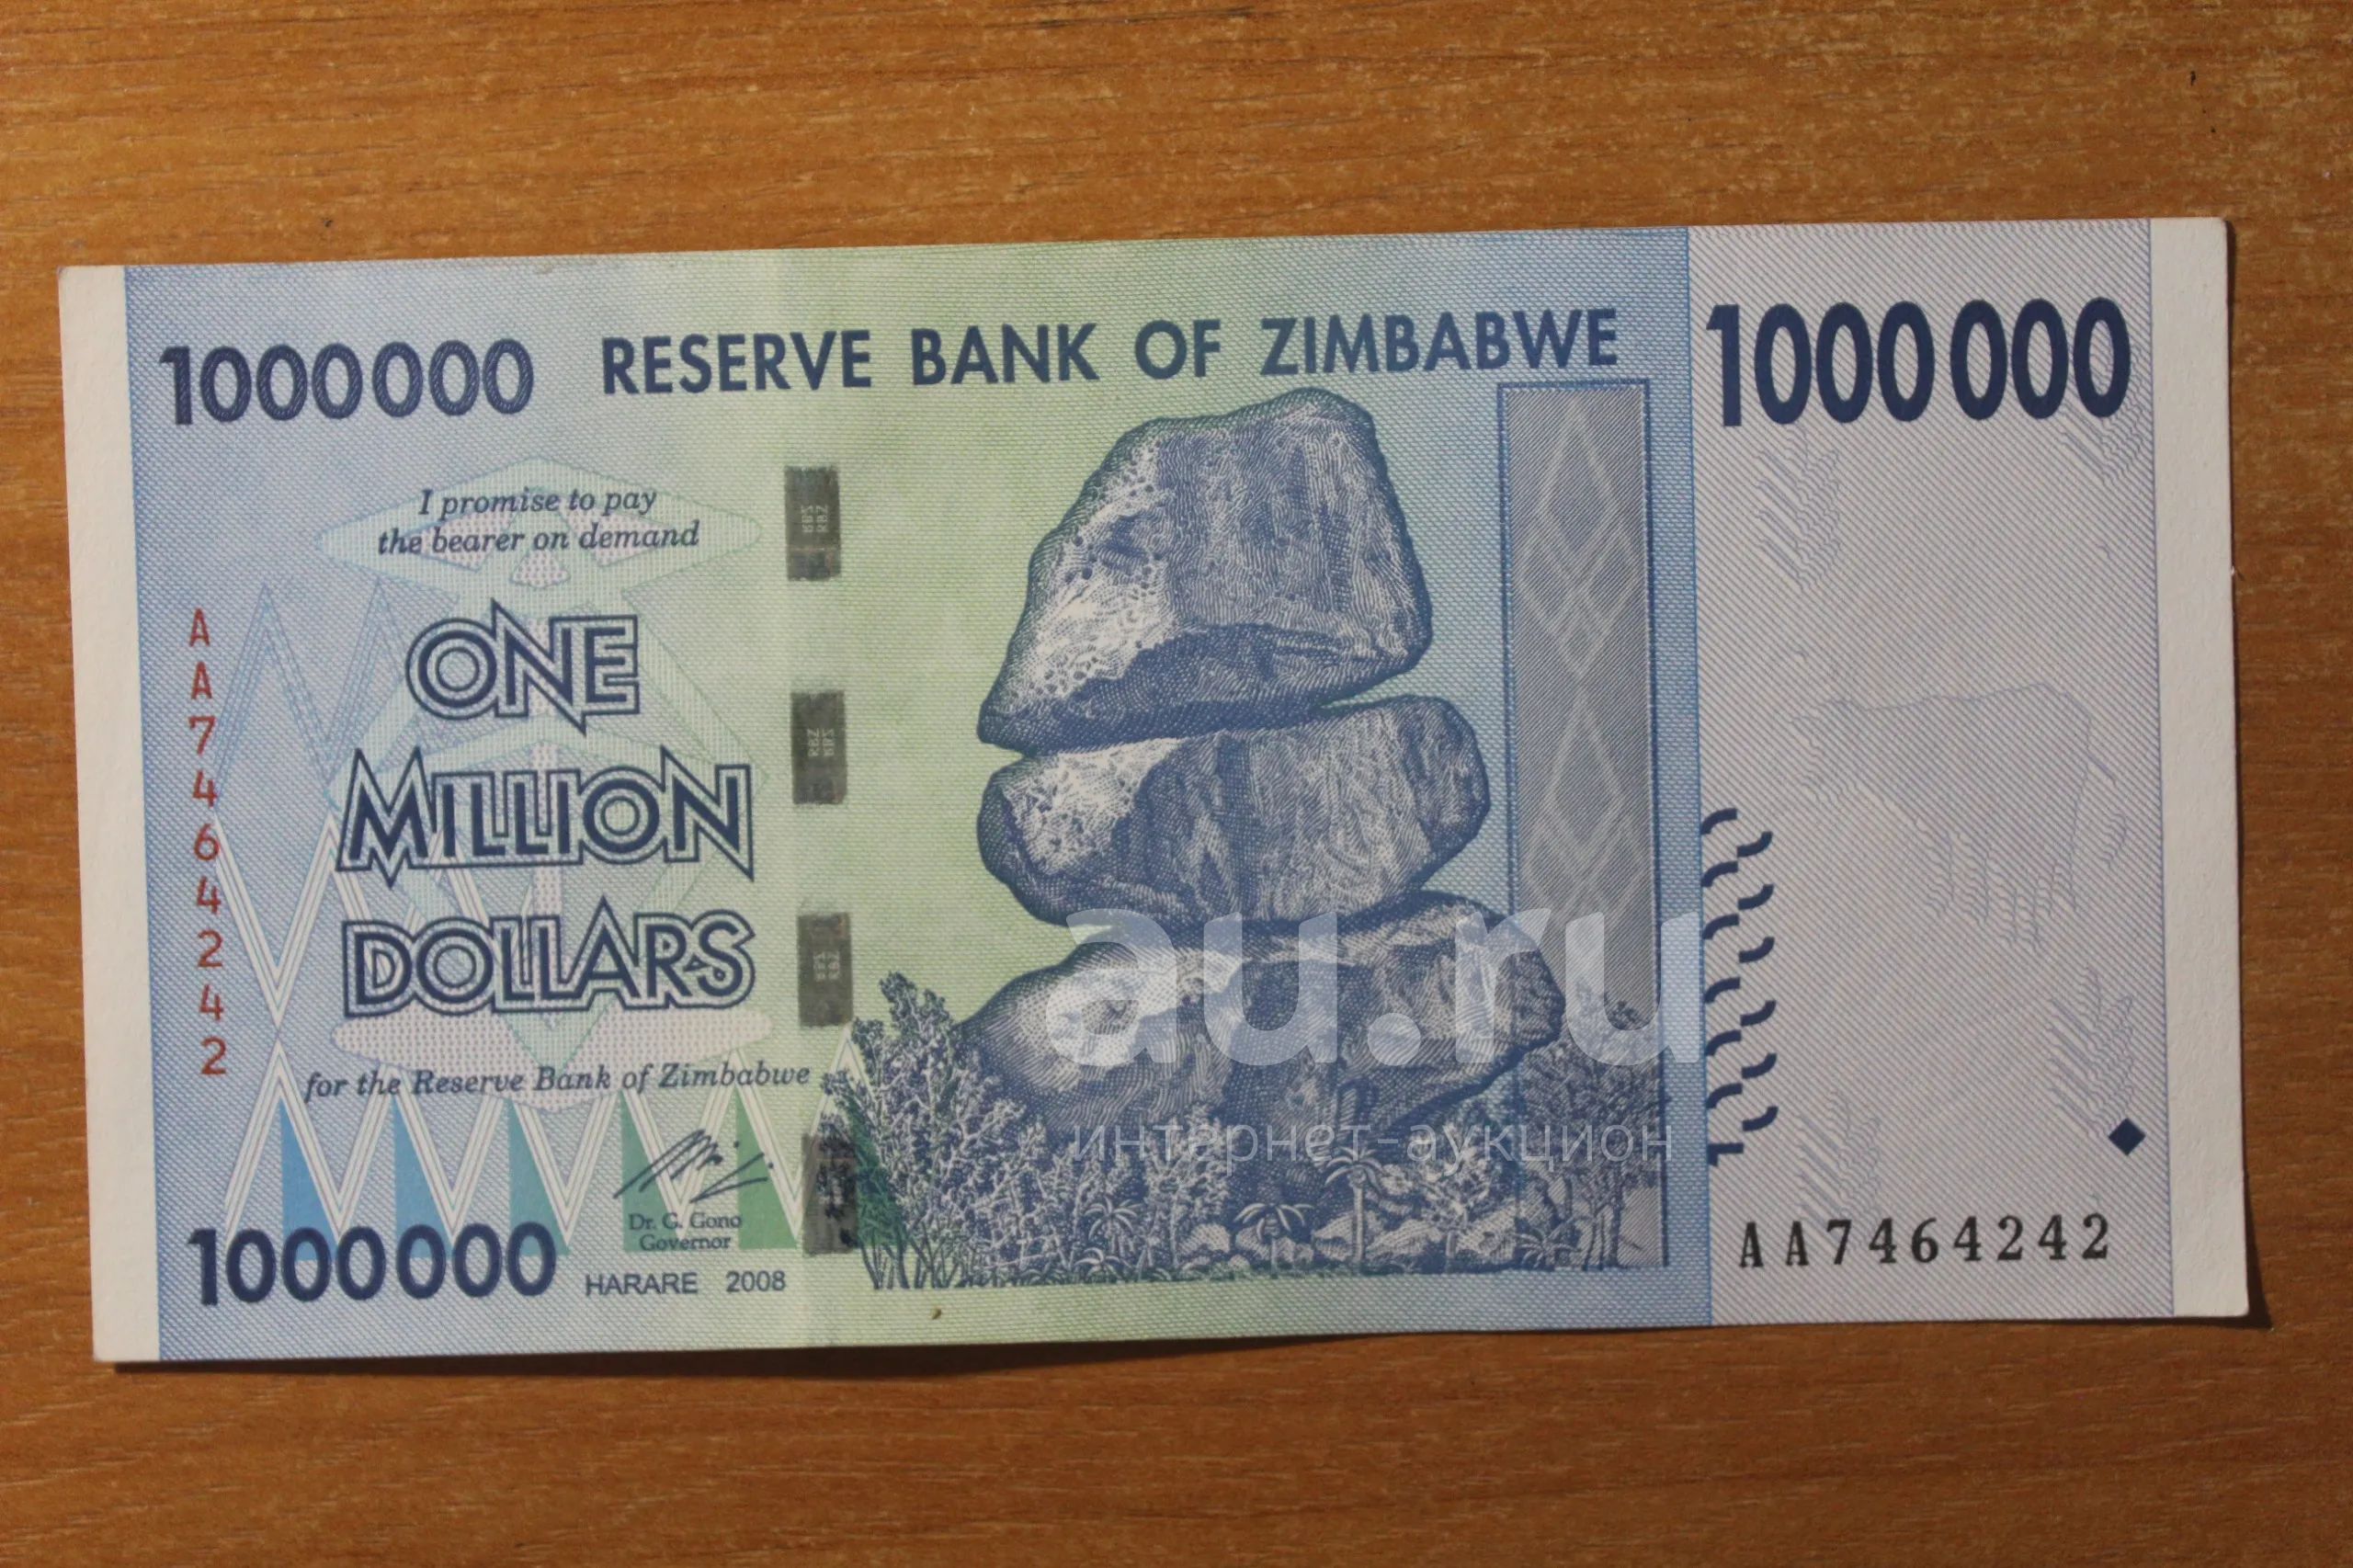 1 млн гривен в рублях. Купюра 10 триллионов долларов Зимбабве. Купюра 100 триллионов долларов Зимбабве. 100 000 000 000 000 Долларов Зимбабве. Купюра в 1 миллиард долларов Зимбабве.